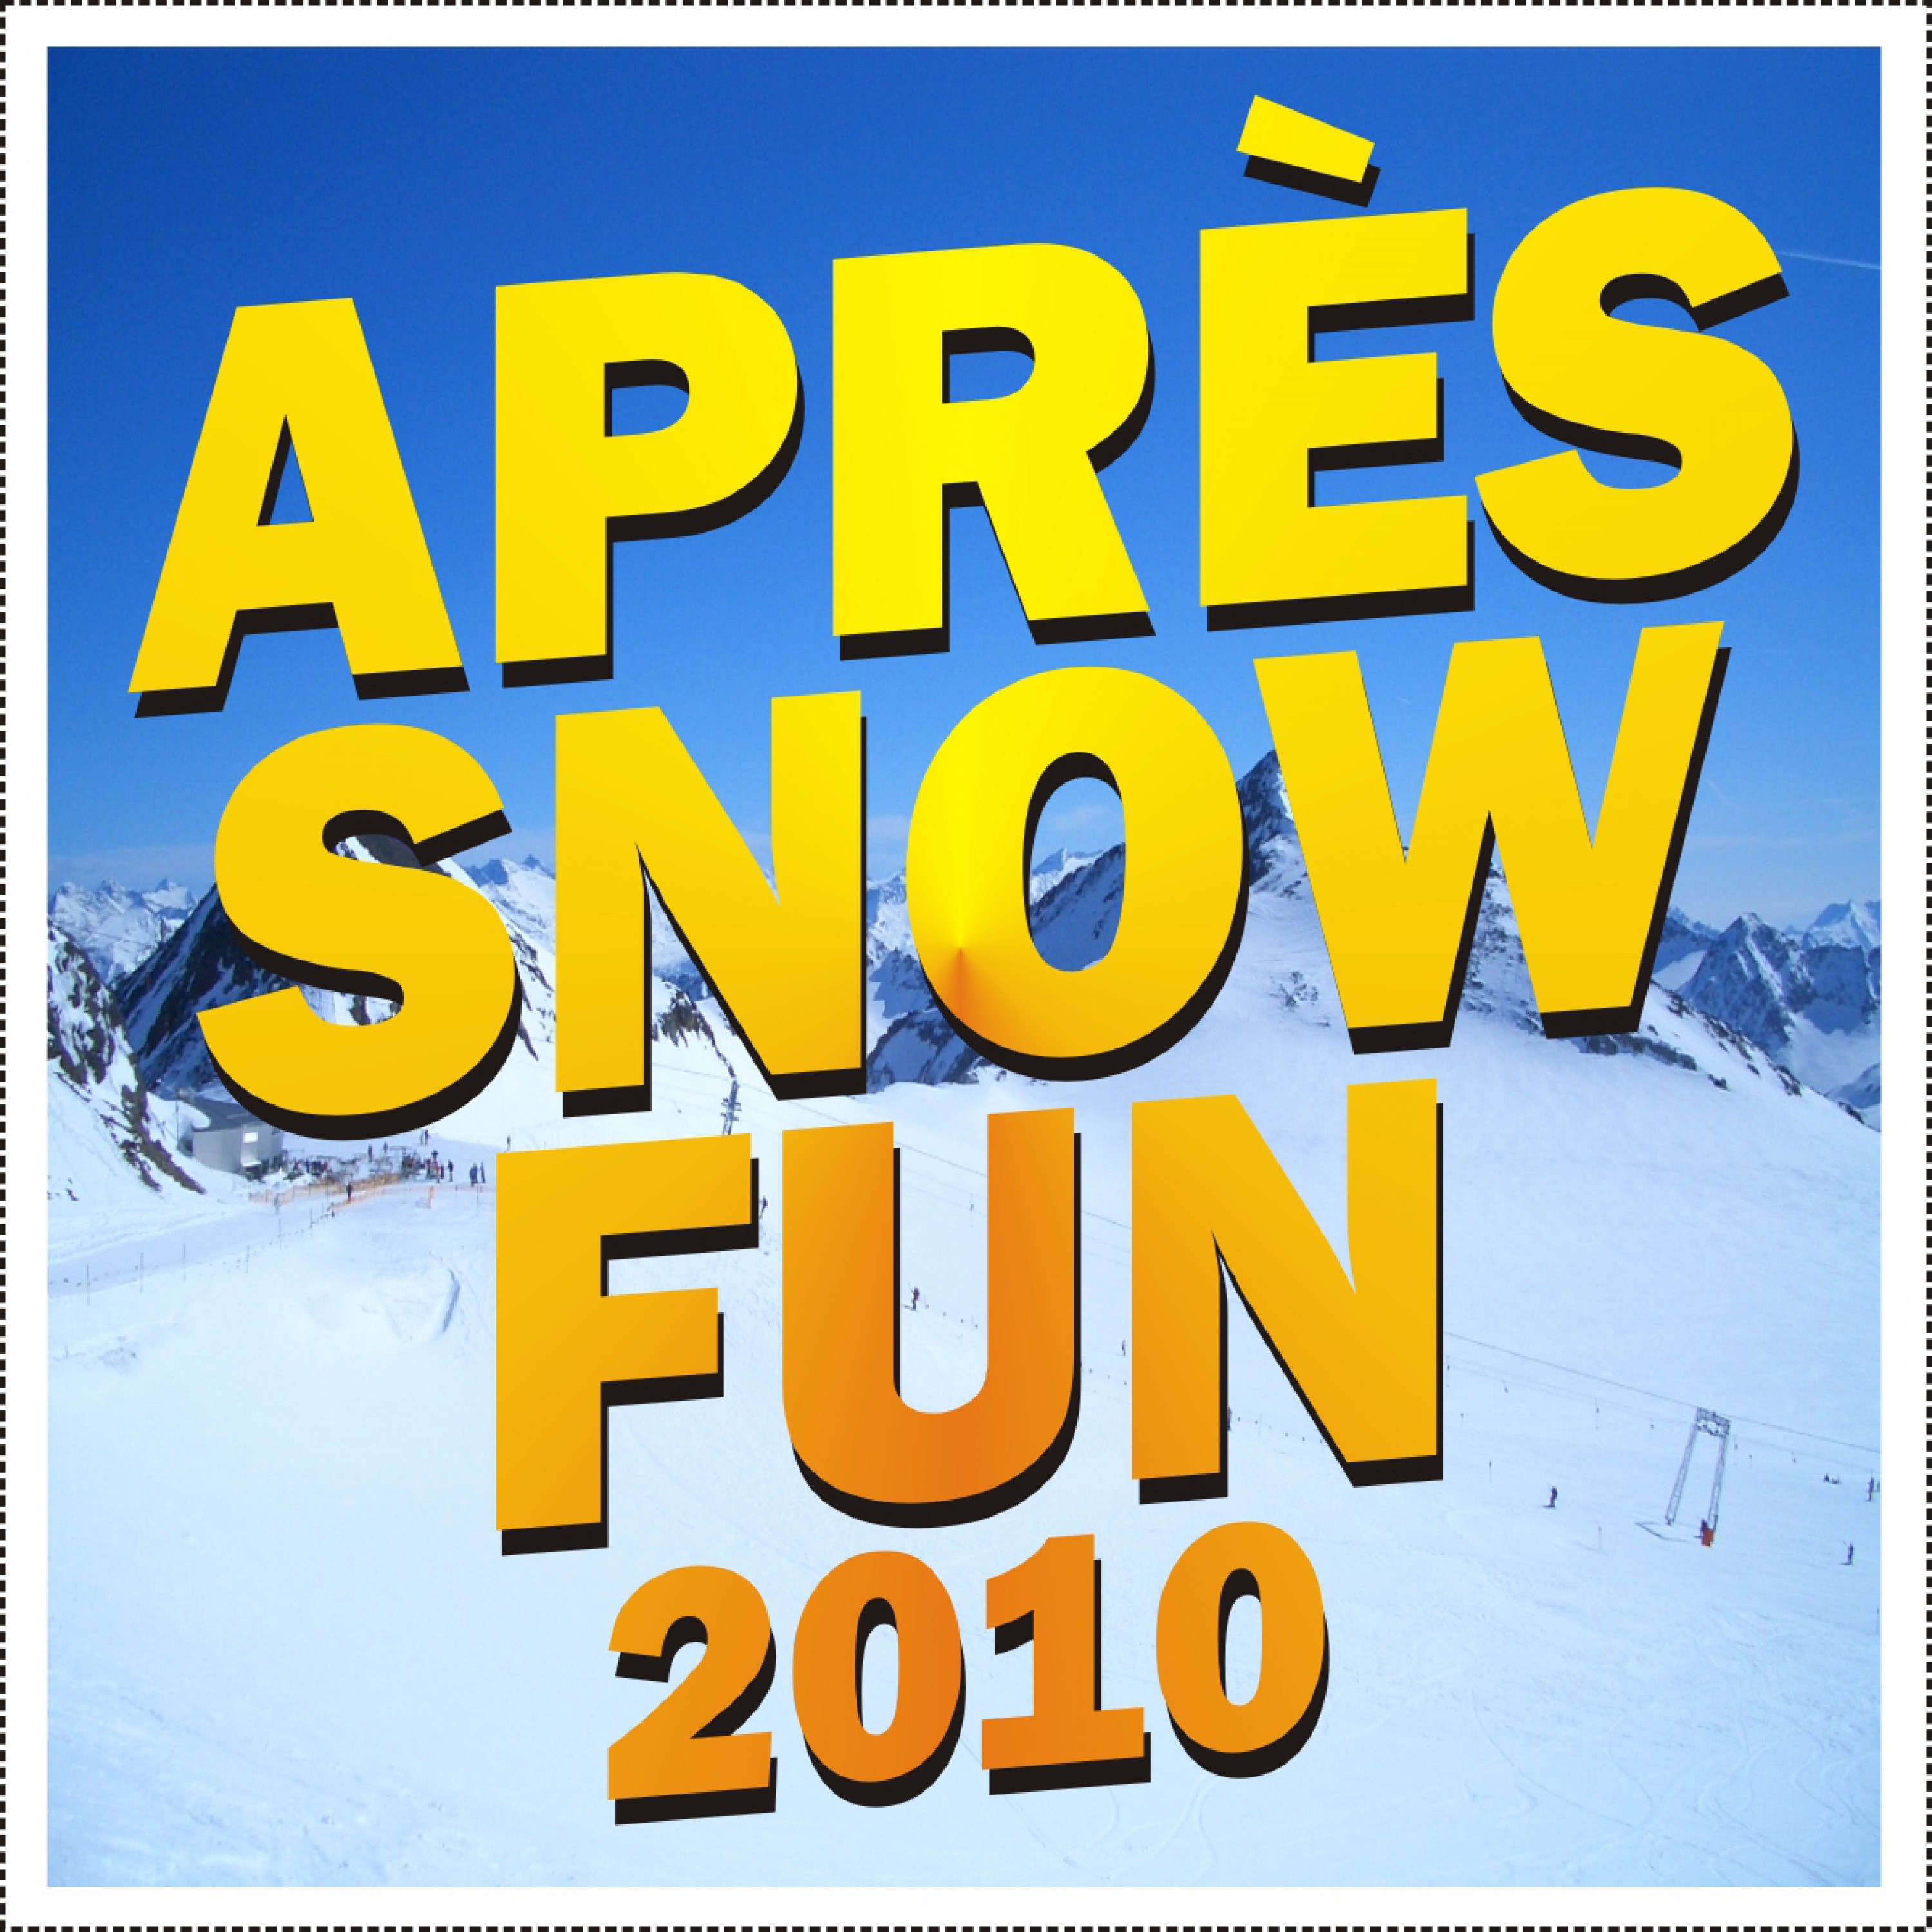 Apre s Snow Fun 2010